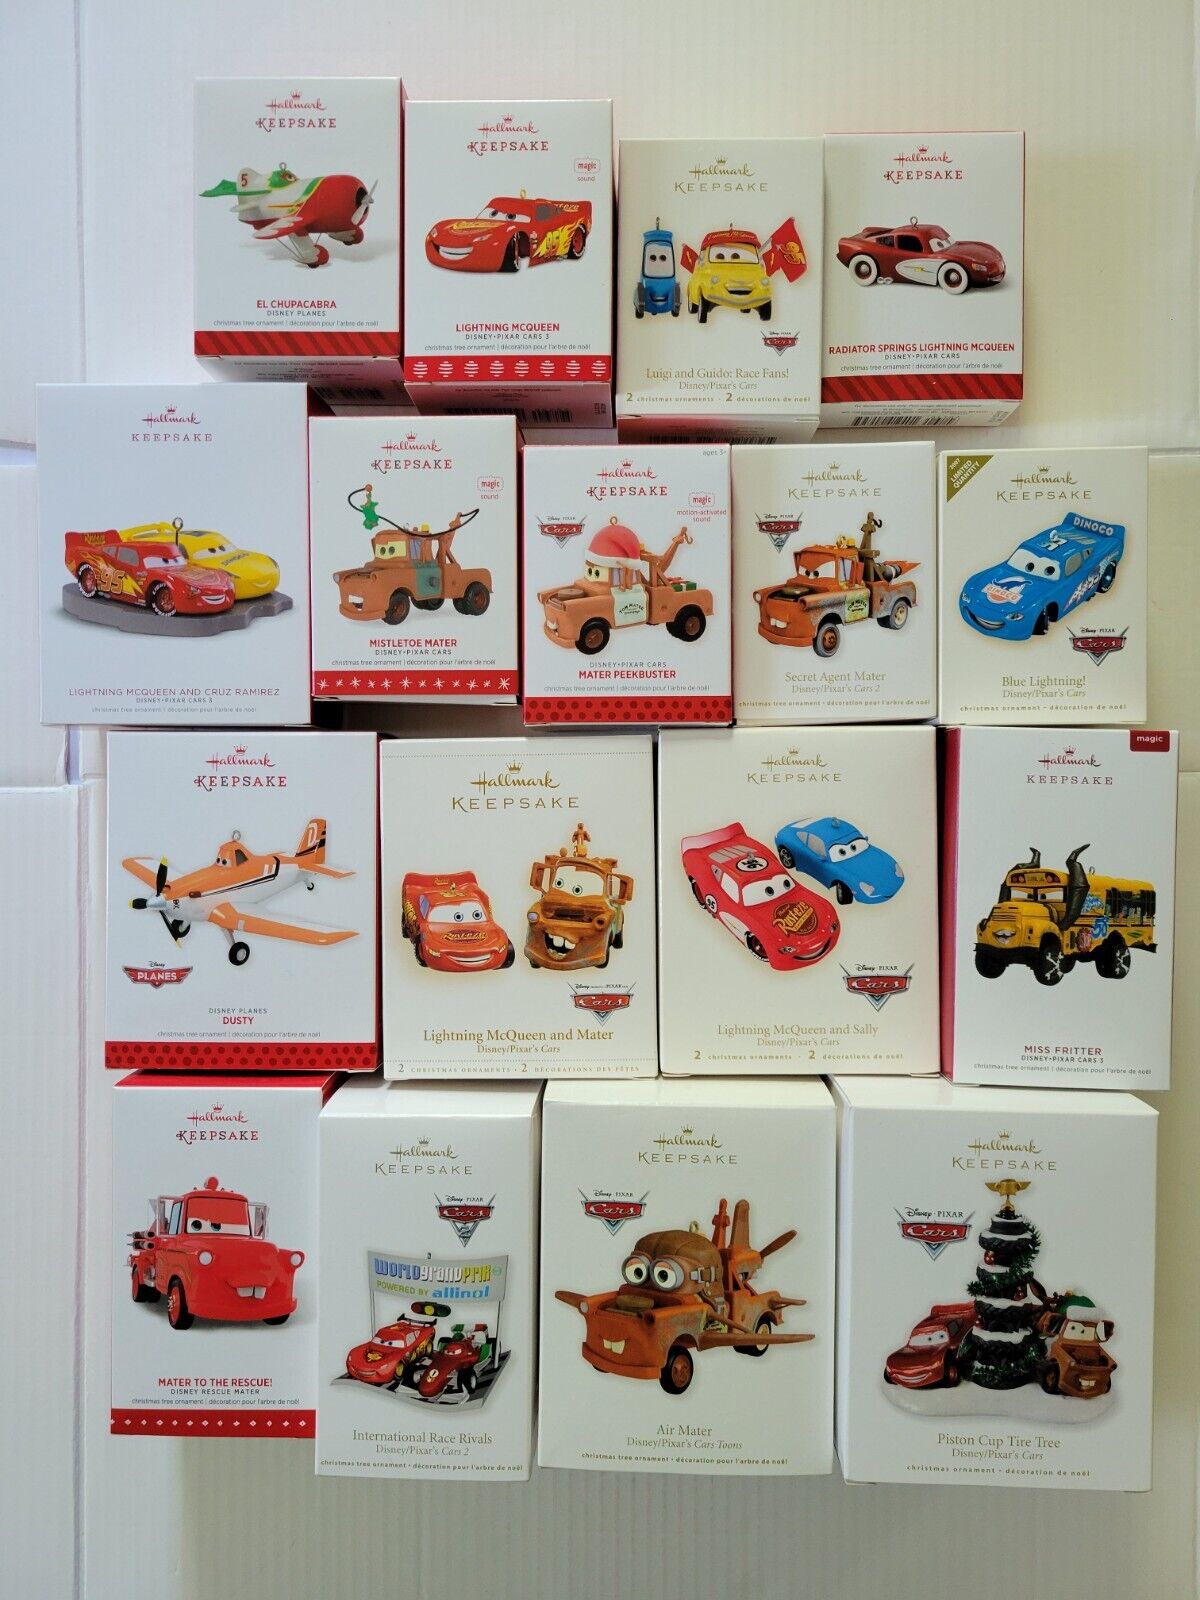 Lot of 17 Hallmark Ornaments Disney's Cars Movie - Lightning McQueen, Mater